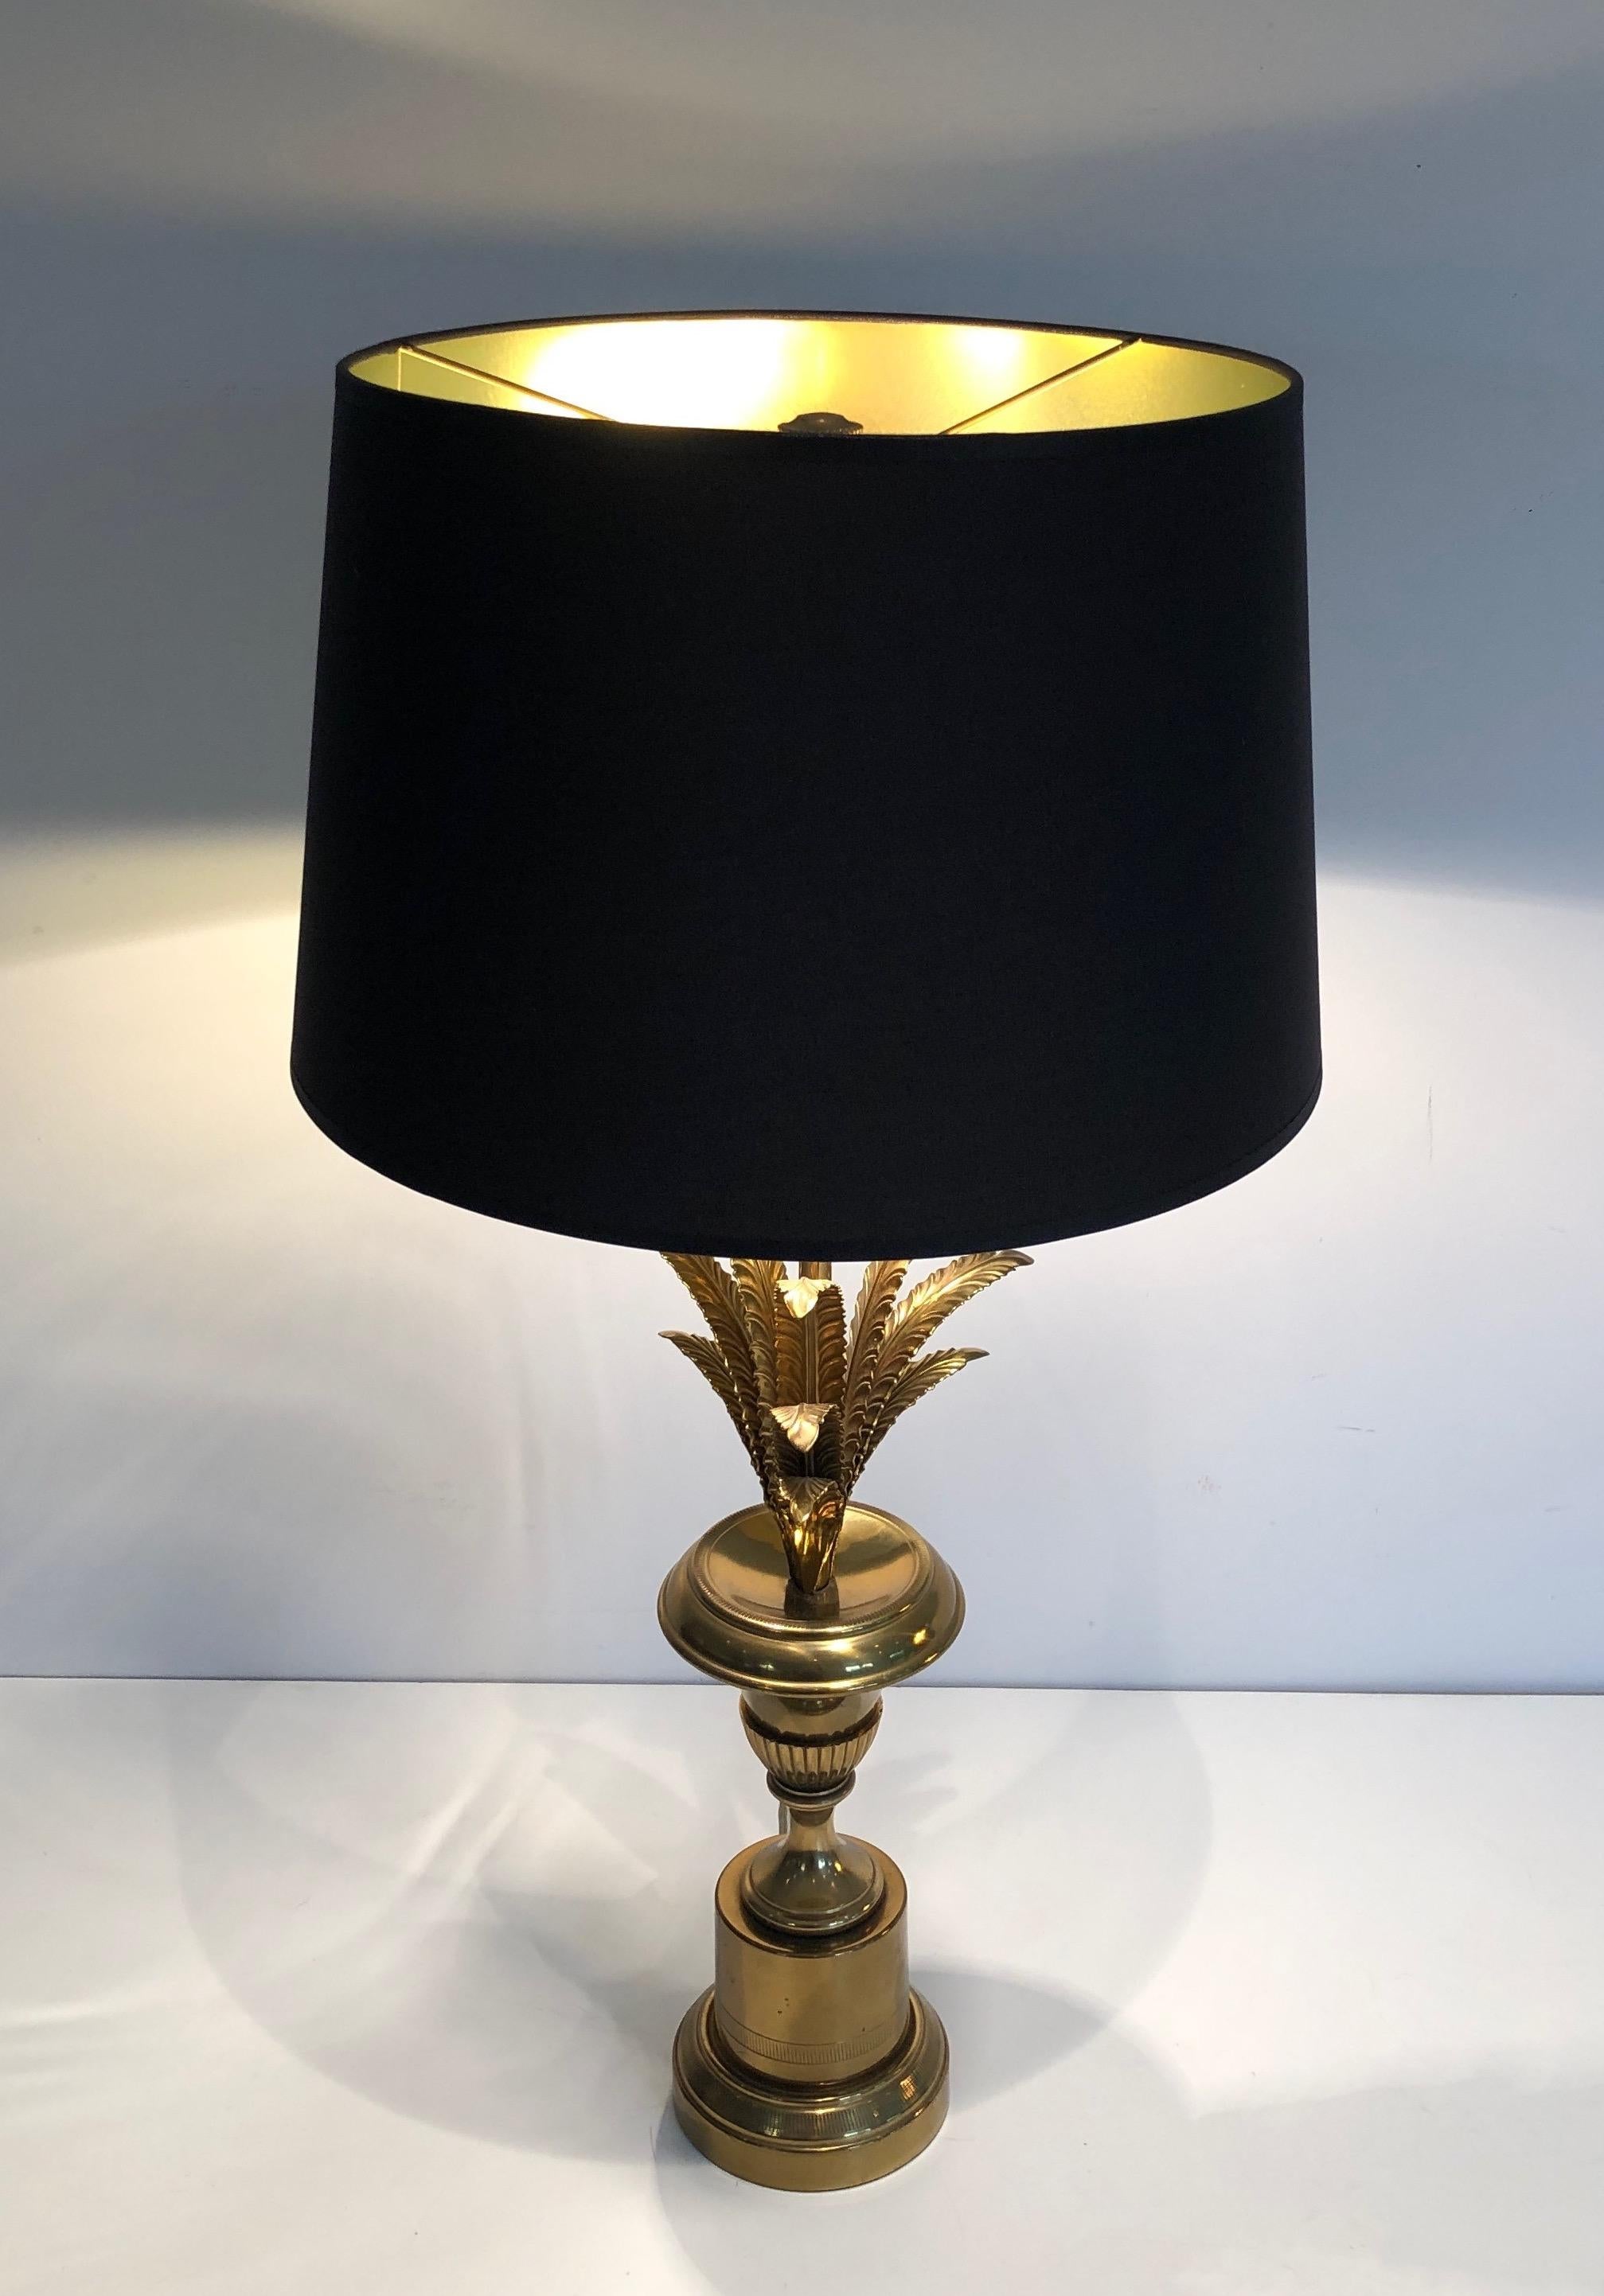 Diese sehr schöne und elegante Palmen-Tischlampe im neoklassischen Stil ist aus Messing gefertigt. Es handelt sich um ein französisches Werk im Stil von Maison Charles. CIRCA 1970